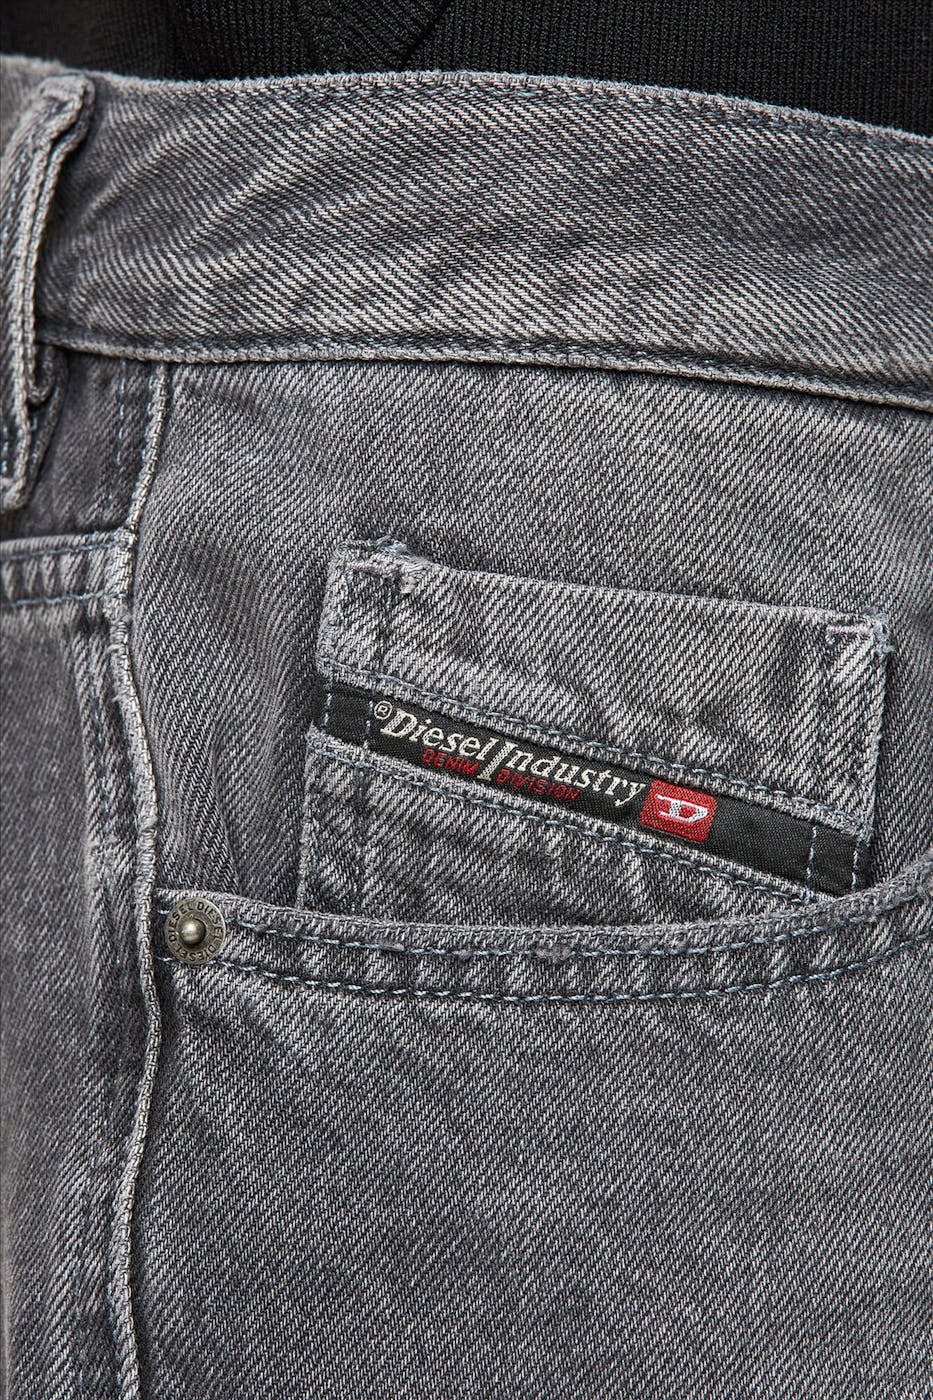 Diesel - Donkergrijze D-Strukt 5-pocket jeansshort